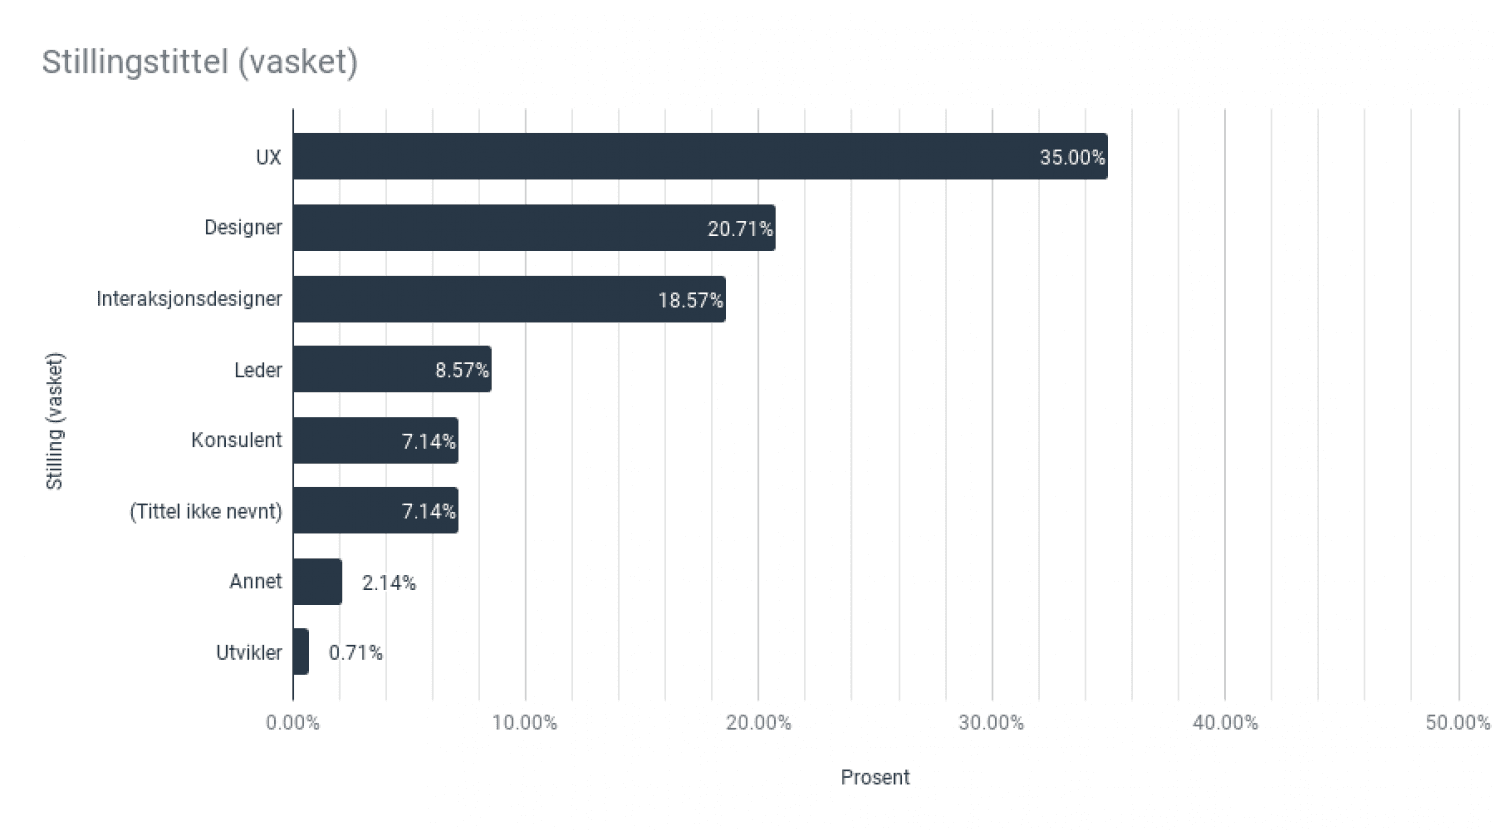 UX: 35 %, designer: 21 %, interaksjonsdesigner: 19 %, leder: 9 %, konsulent: 7 %, nevnte ikke tittel: 7 %, annet: 2 %, utvikler: 1 %